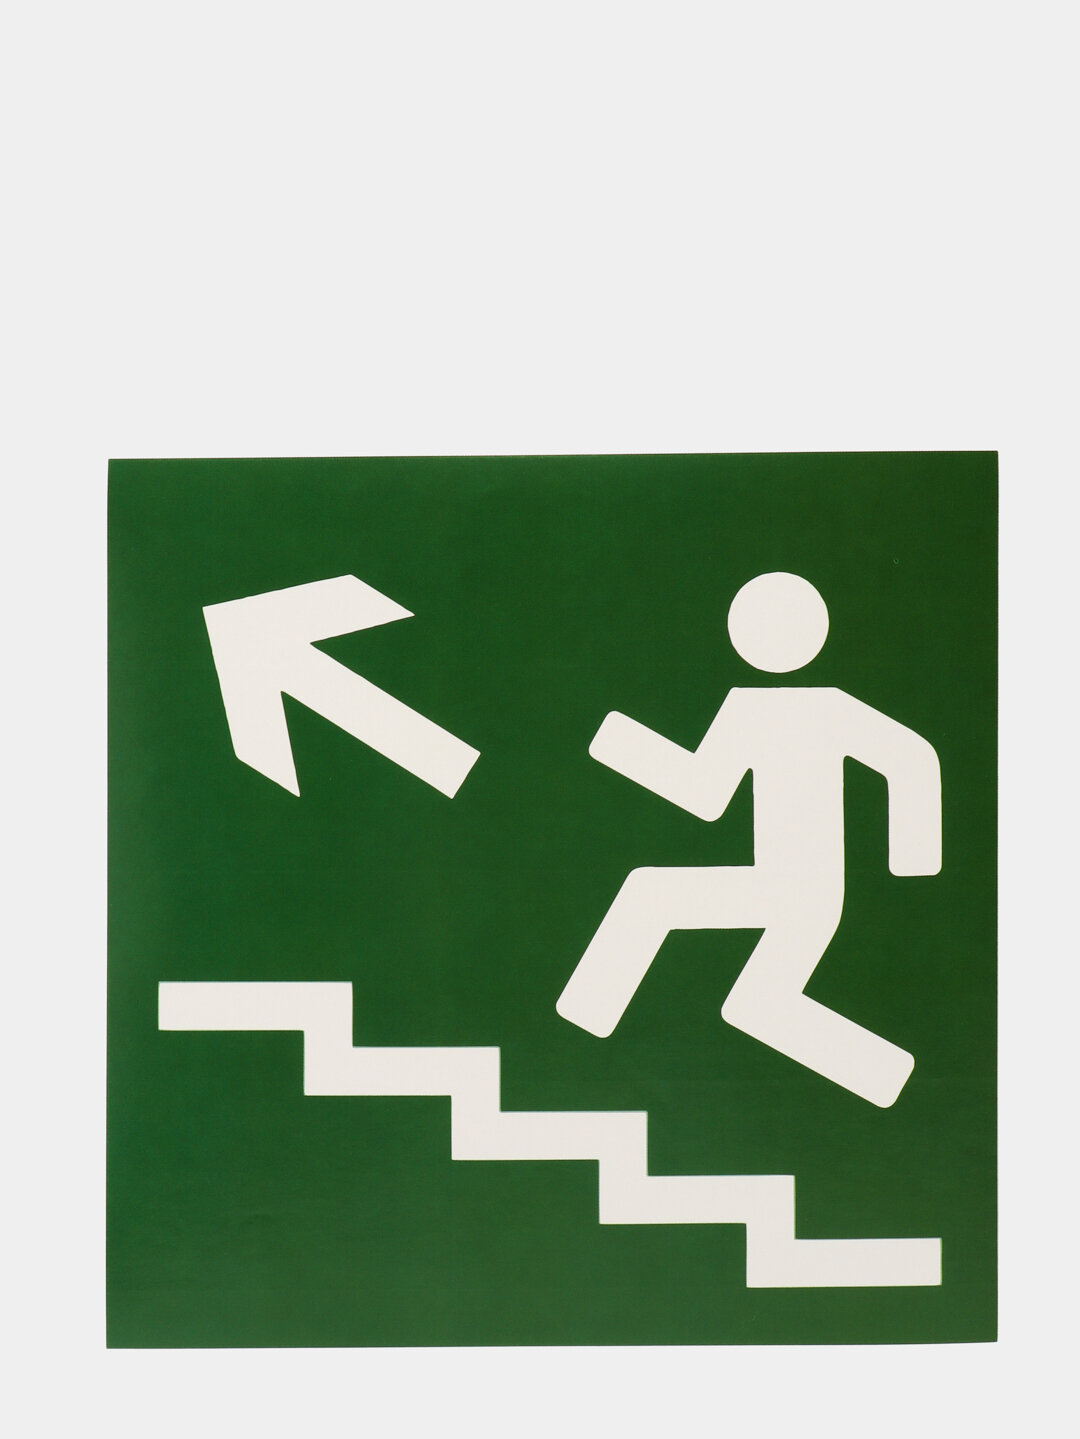 Наклейка "Направление к эвакуационному выходу по лестнице вверх", 18 х 18 см